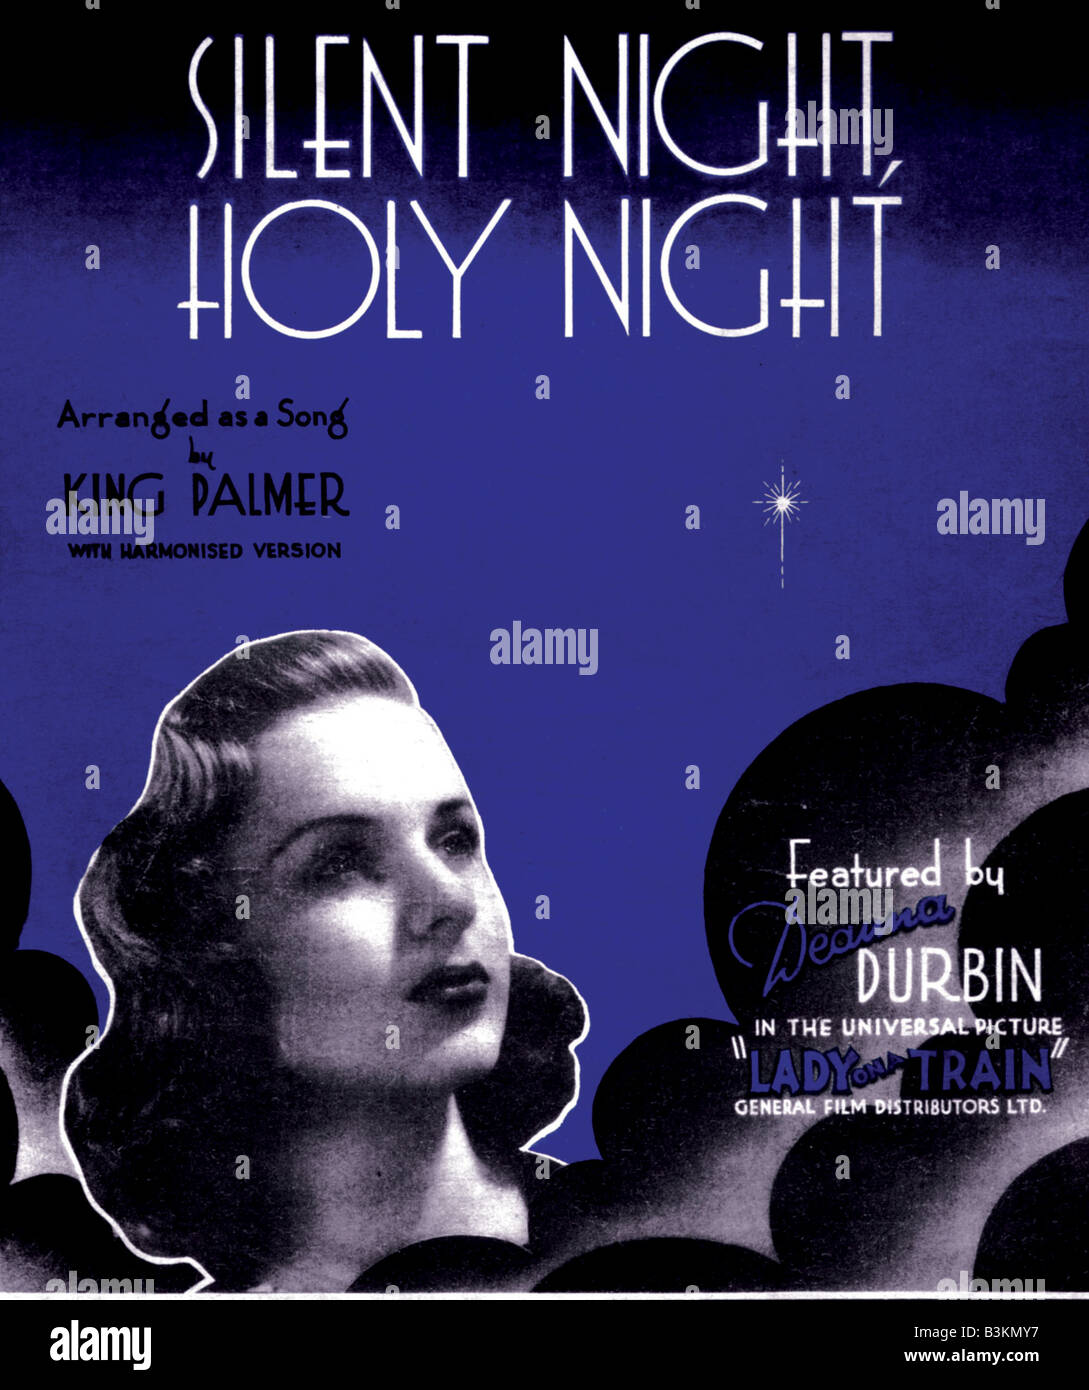 DEANNA DURBIN partitions pour Silent Night, Holy Night chanté par elle dans le film universel 1945 Dame dans un train Banque D'Images